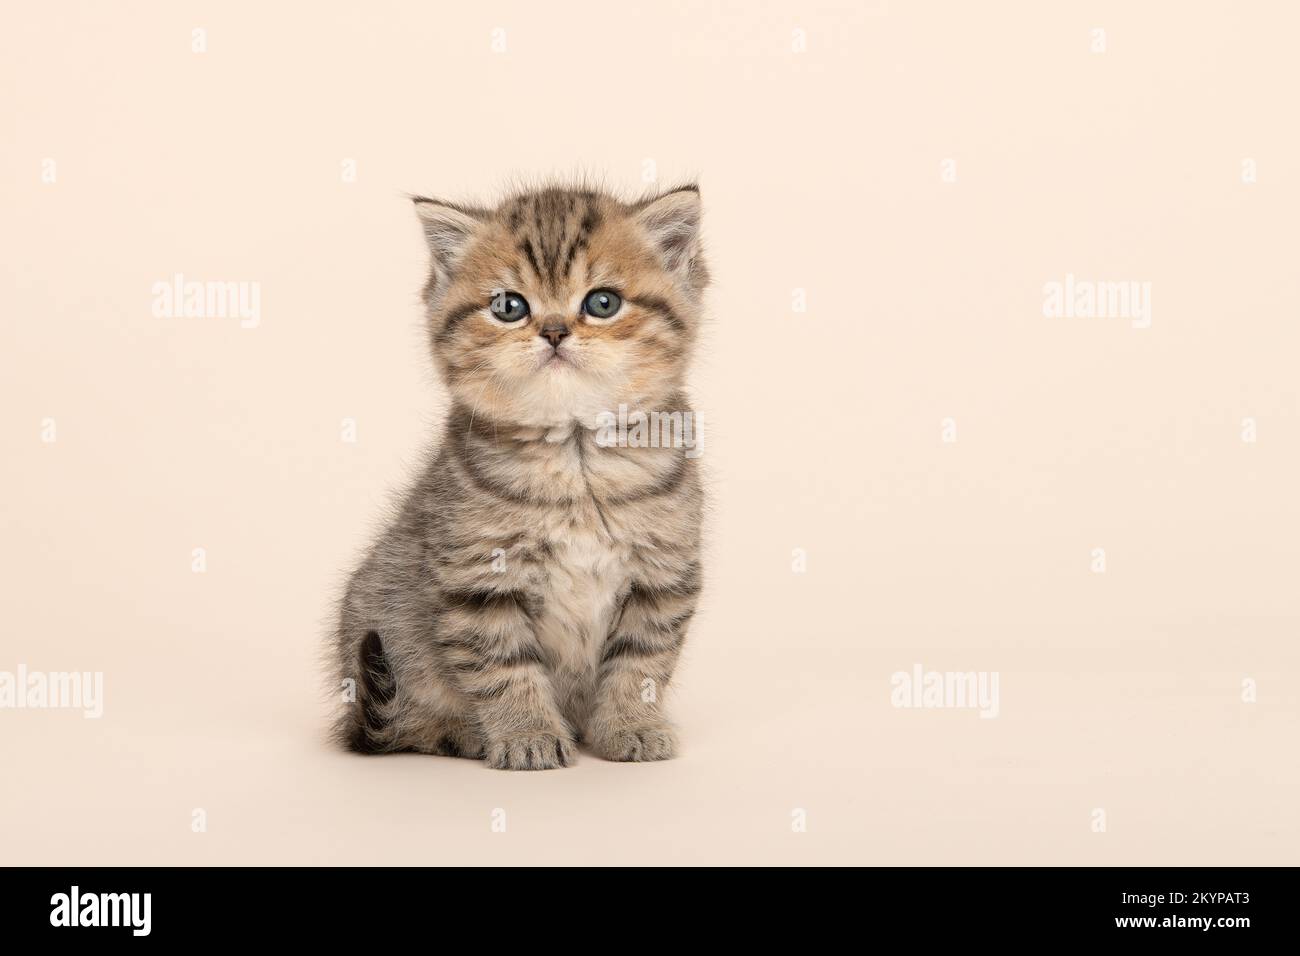 Süße sitzende goldene Tabby reinrassige britische Kurzhaar-Babykatze, die auf einem cremefarbenen Hintergrund in die Kamera schaut Stockfoto